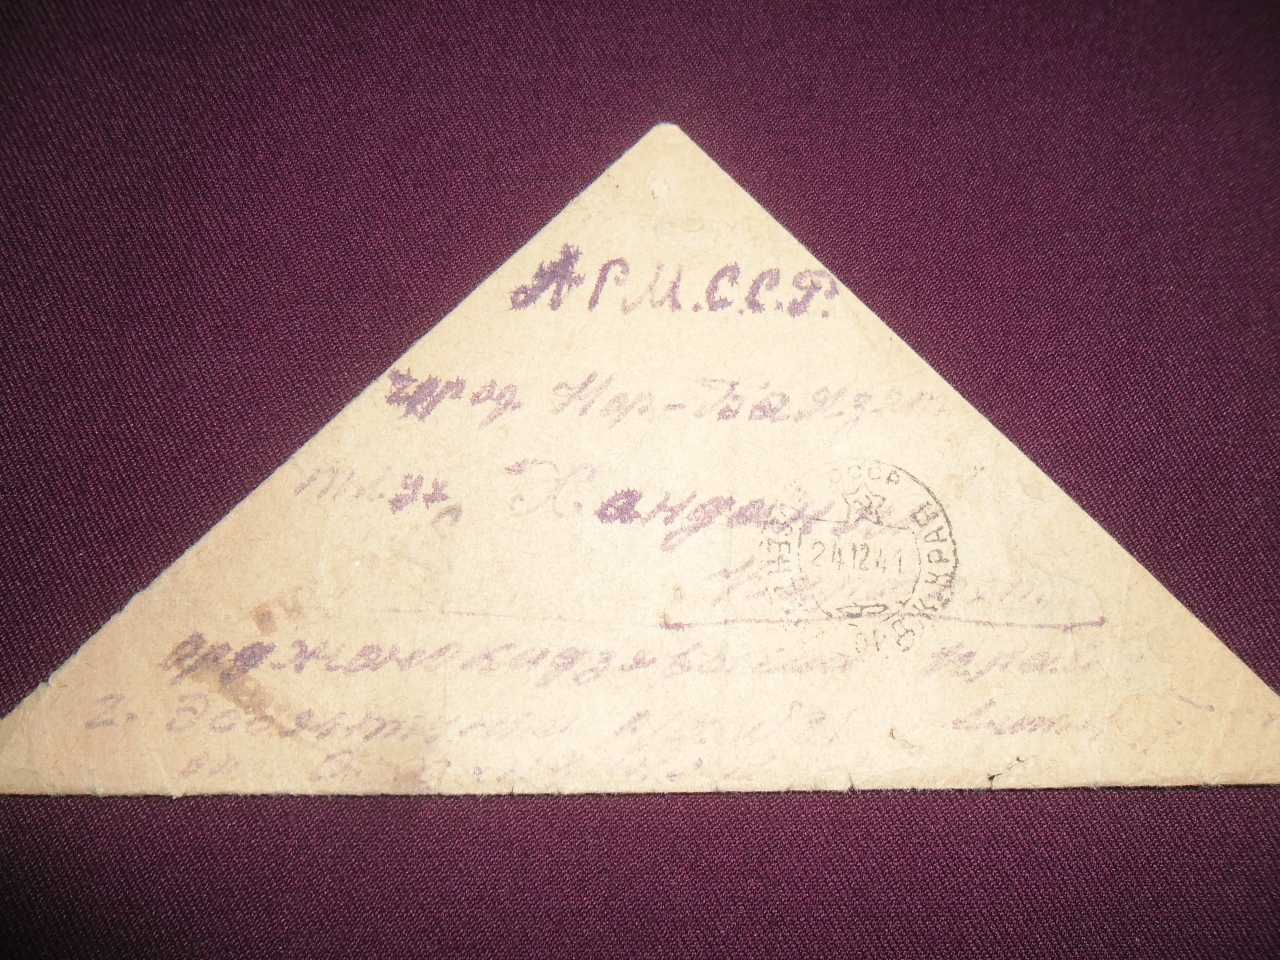 Նամակ եռածալ՝ Օնիկ (Հովհաննես) Կարապետի Խանդանյանից (Հայրենական պատերազմի մասնակից) հարազատներին